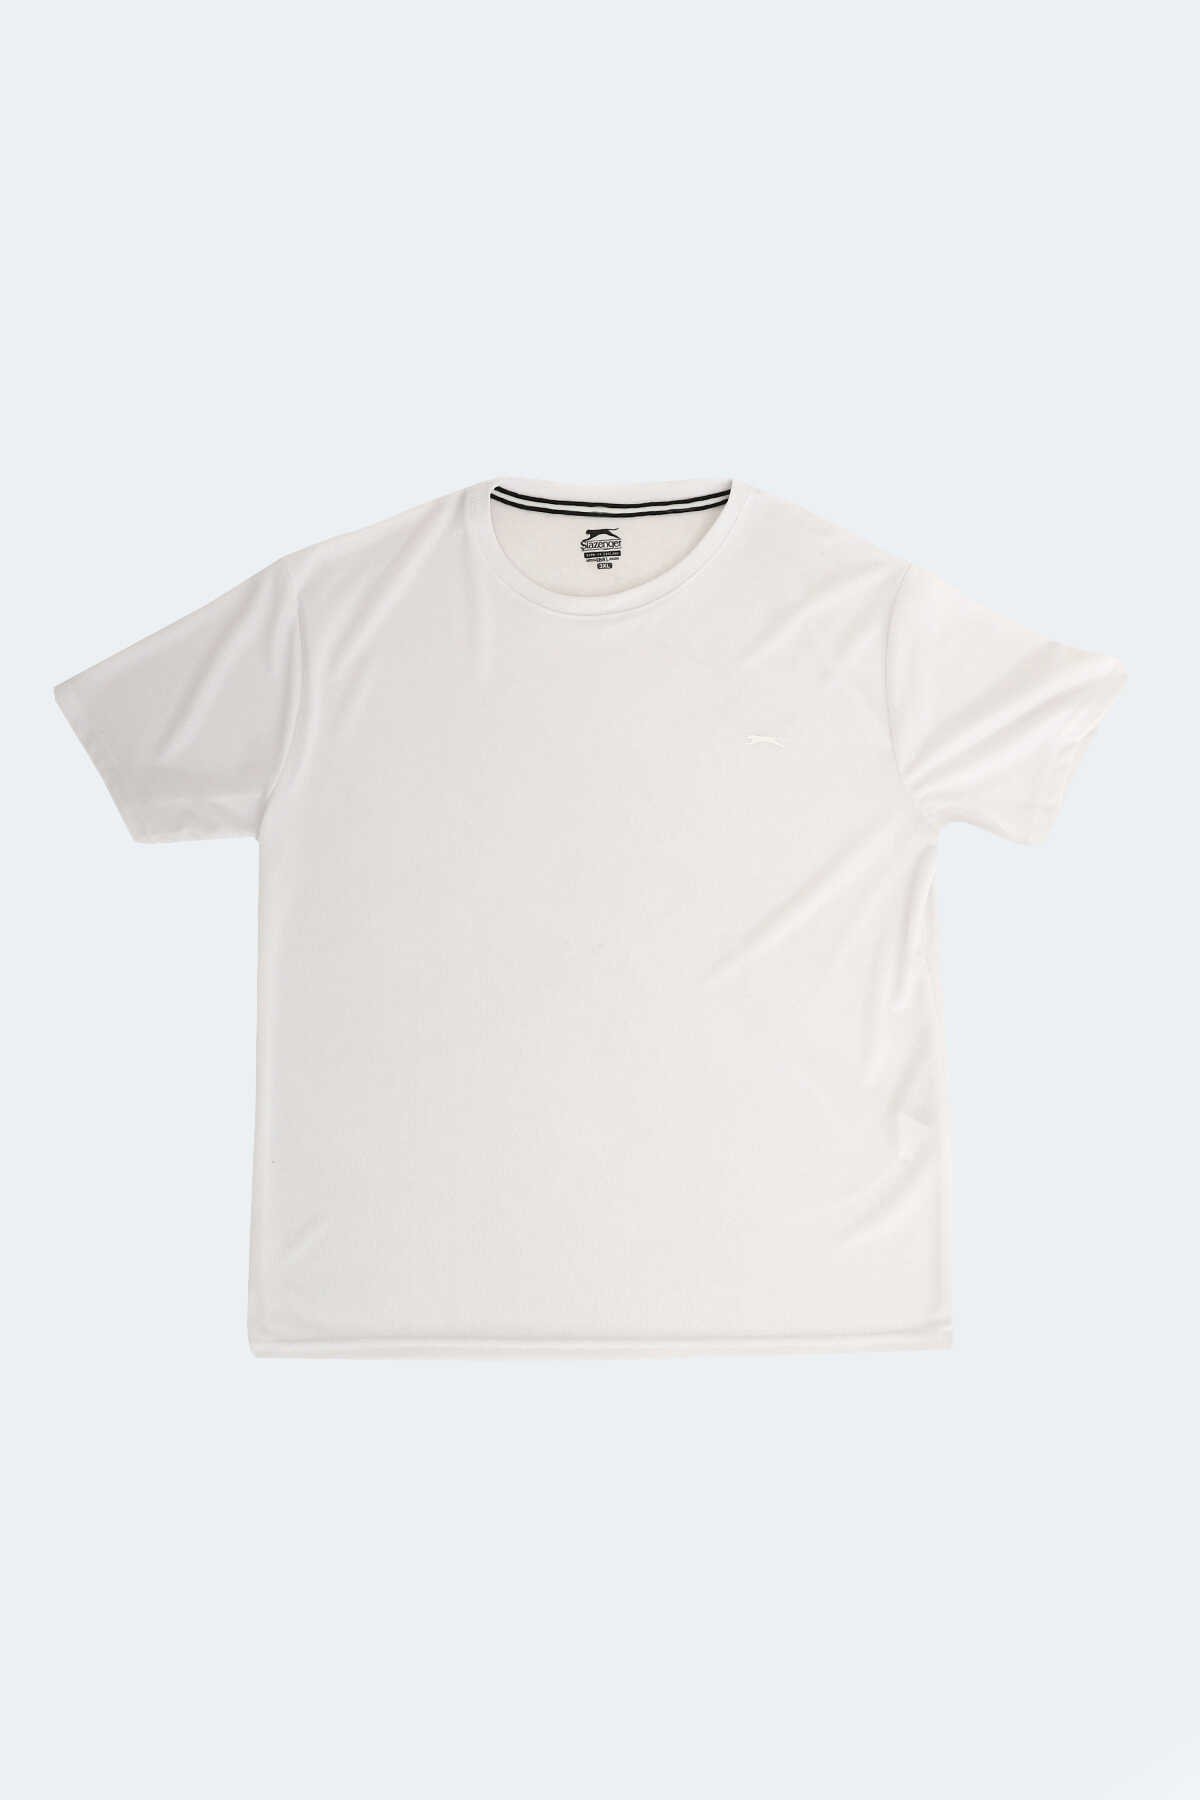 Slazenger - Slazenger ODALIS Büyük Beden Erkek Kısa Kollu T-Shirt Beyaz